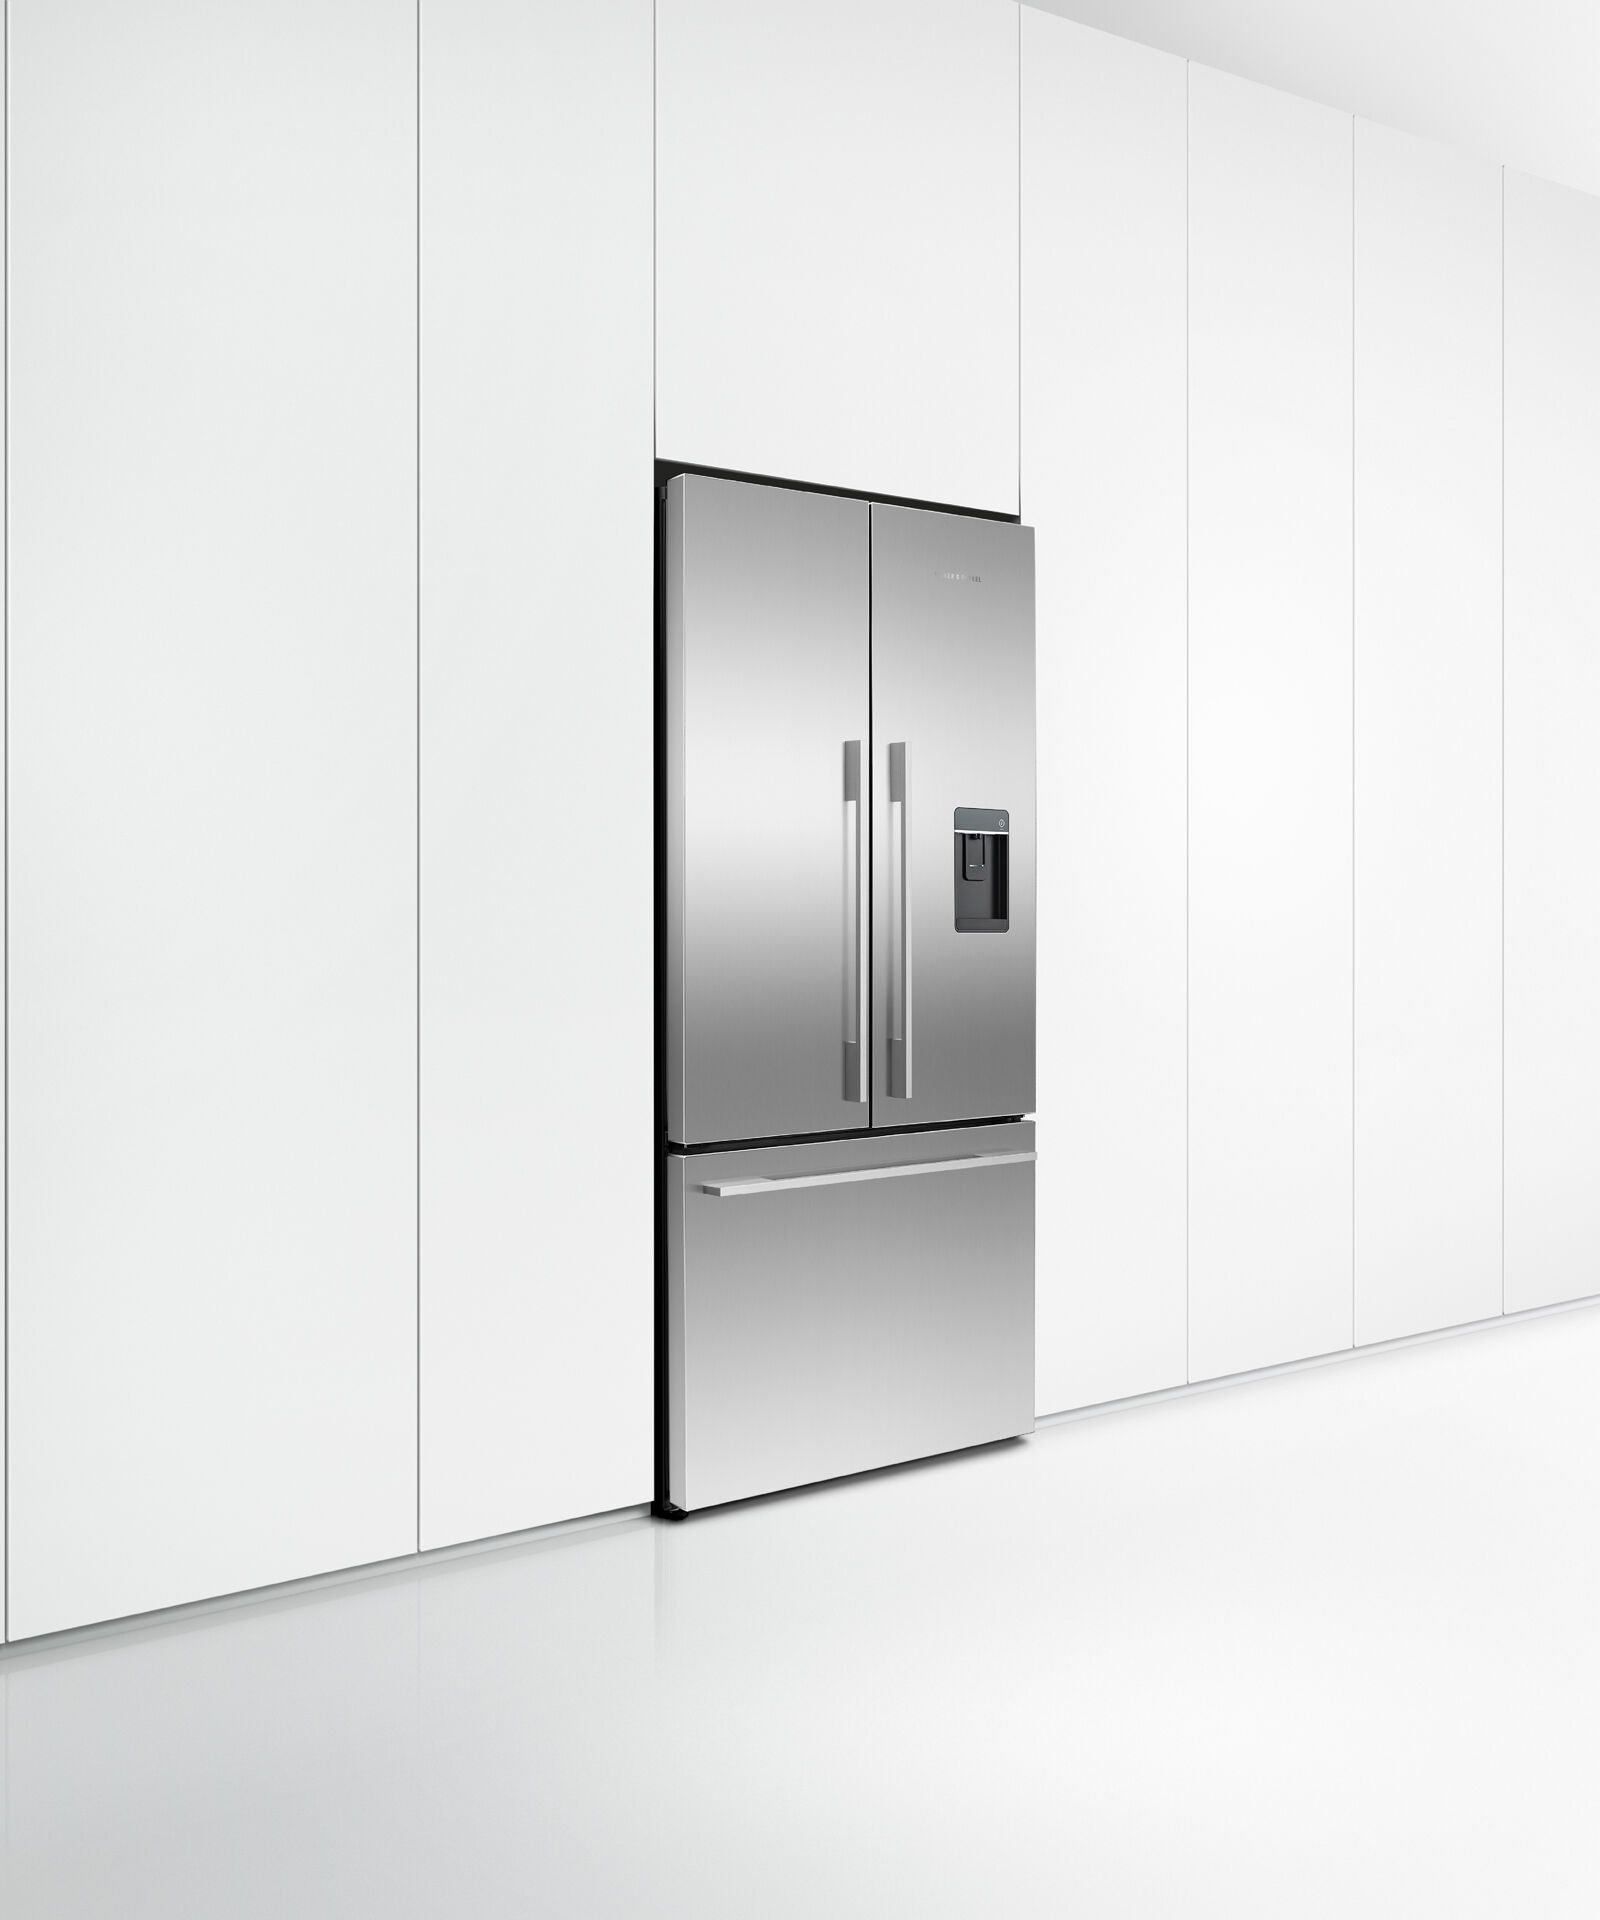 法式對開門雪櫃, 90cm, 自動製冰和冰水, gallery image 5.0